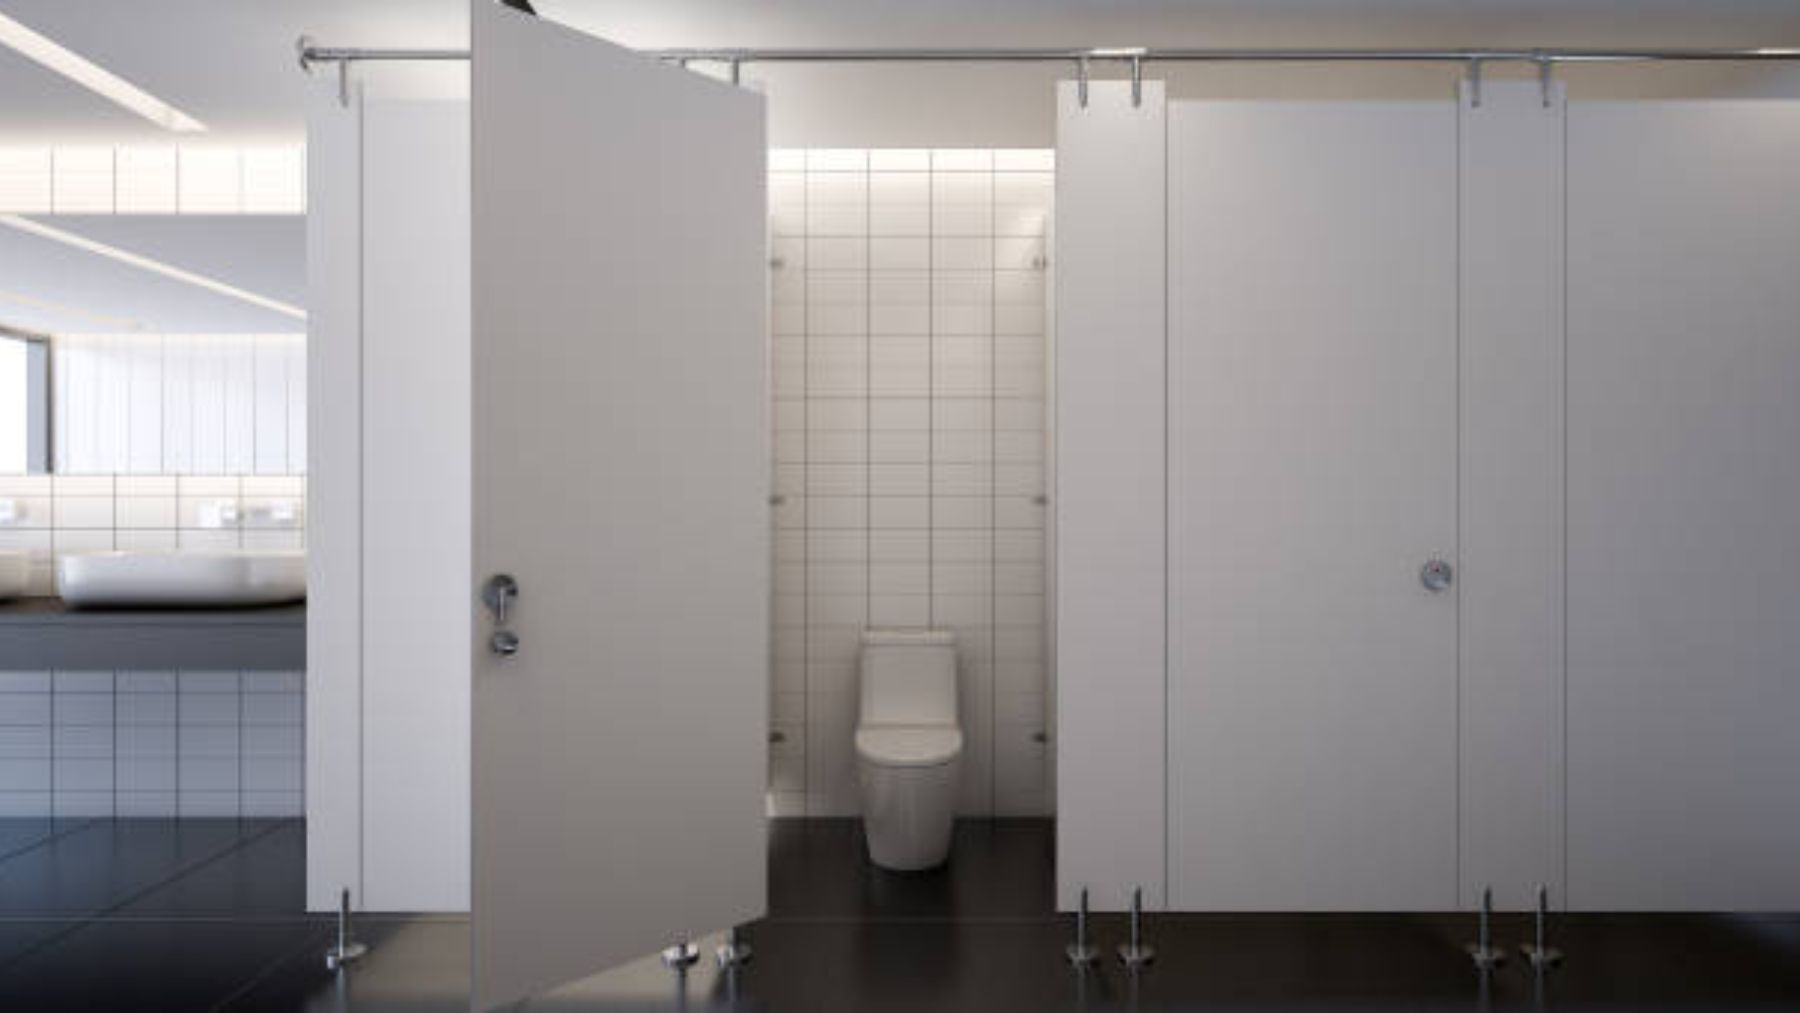 Motivos por los que los baños públicos tienen puertas más pequeñas